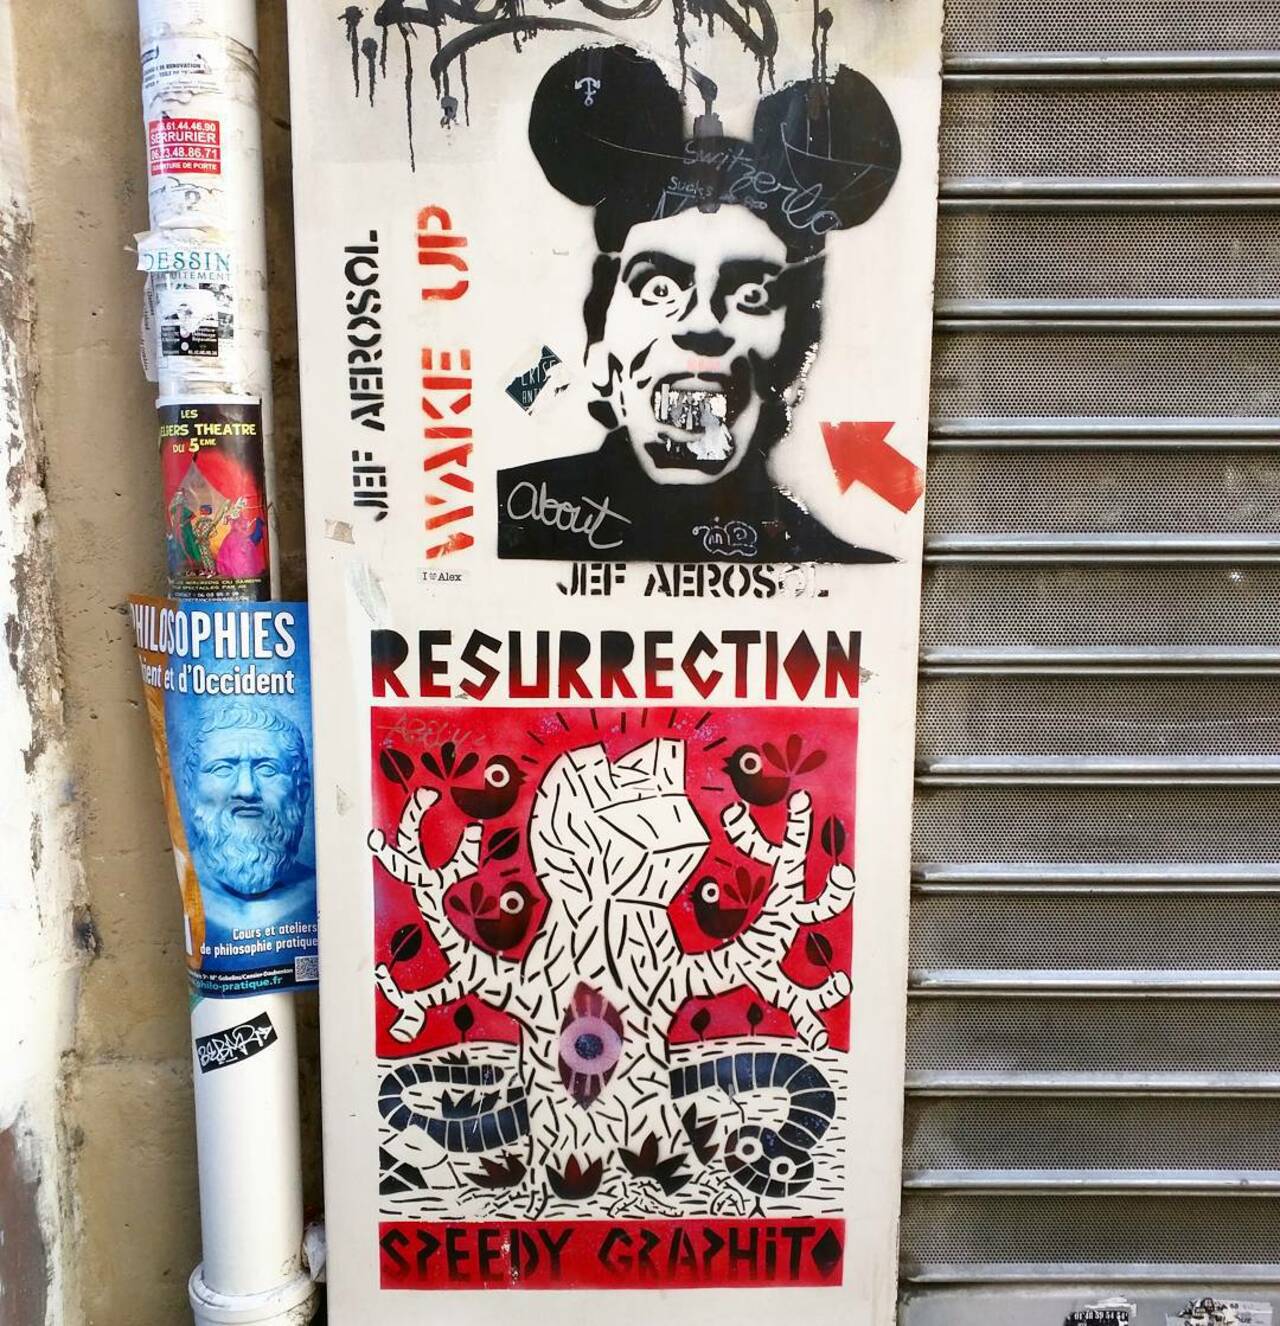 #Paris #graffiti photo by @alphaquadra http://ift.tt/1Kb6f7m #StreetArt http://t.co/MRl5GnXOh1